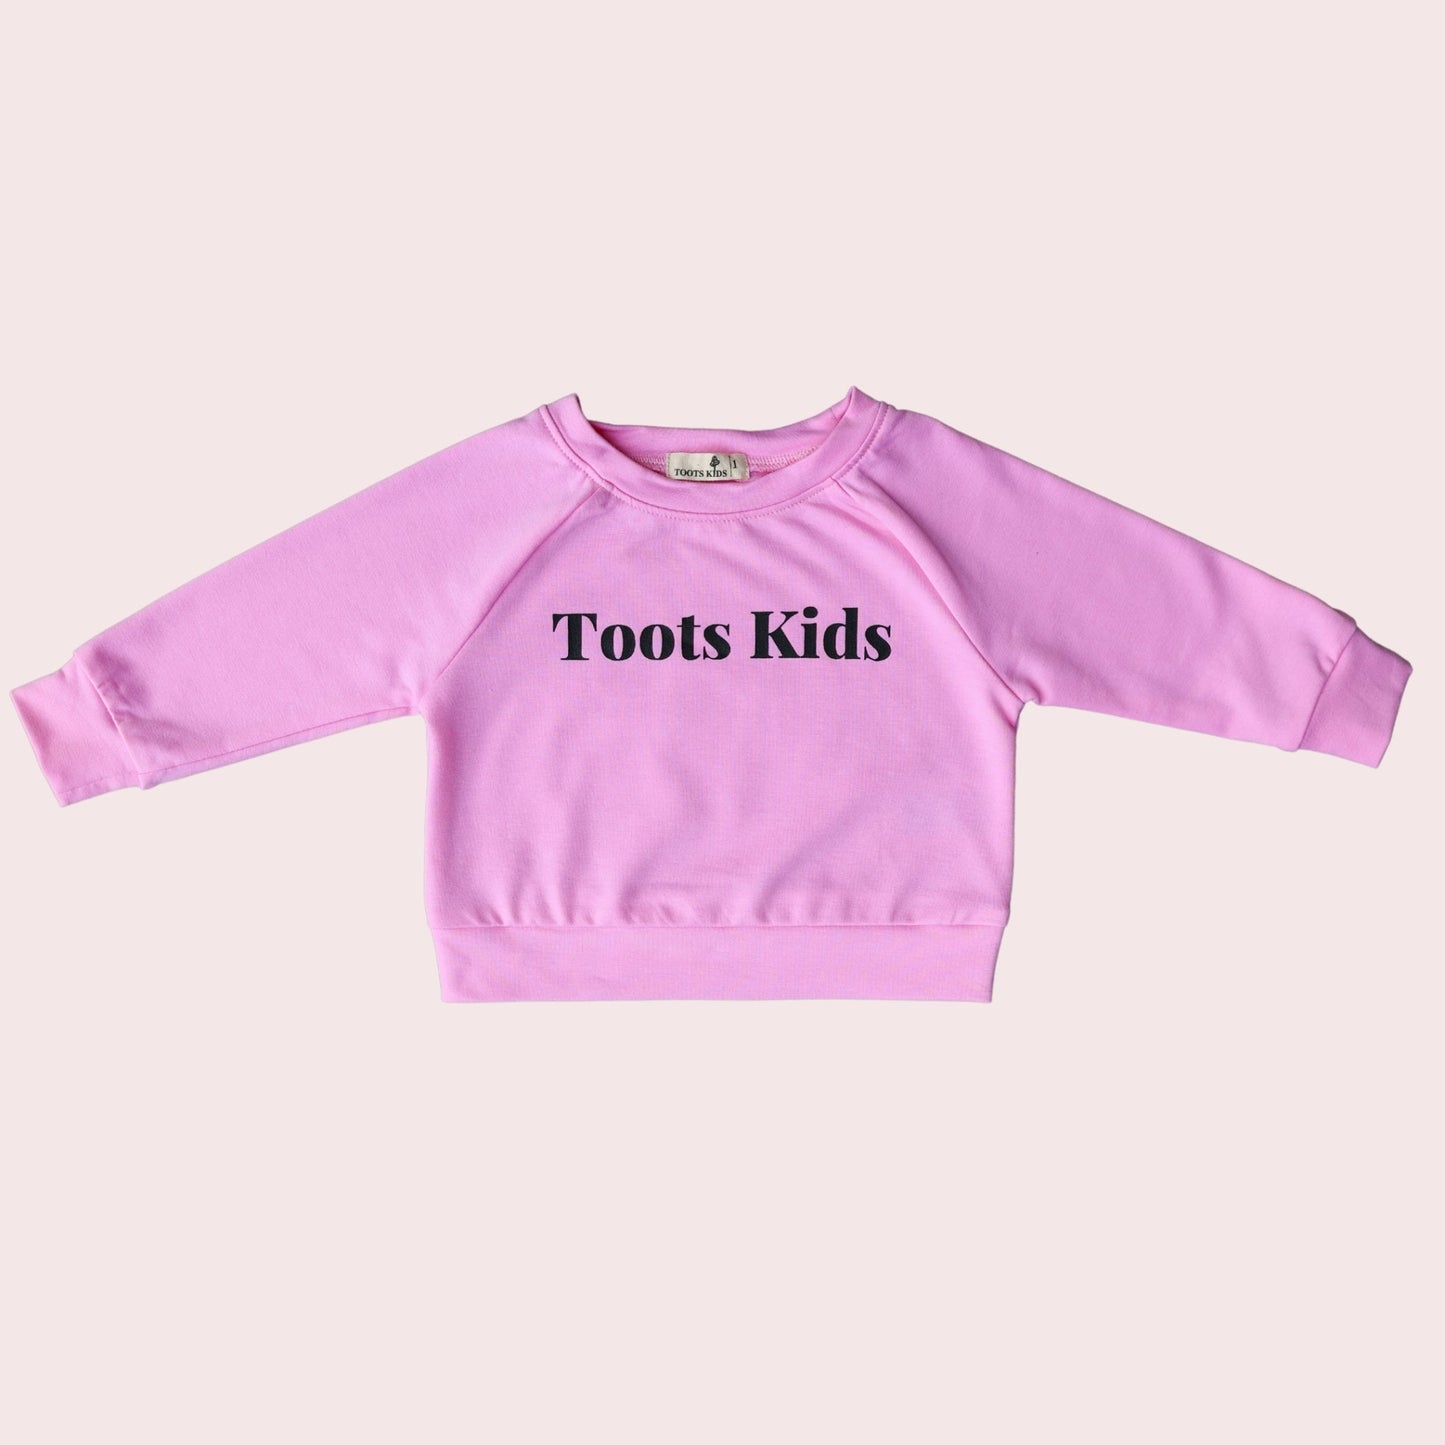 PINK SWEATSHIRT - Toots Kids